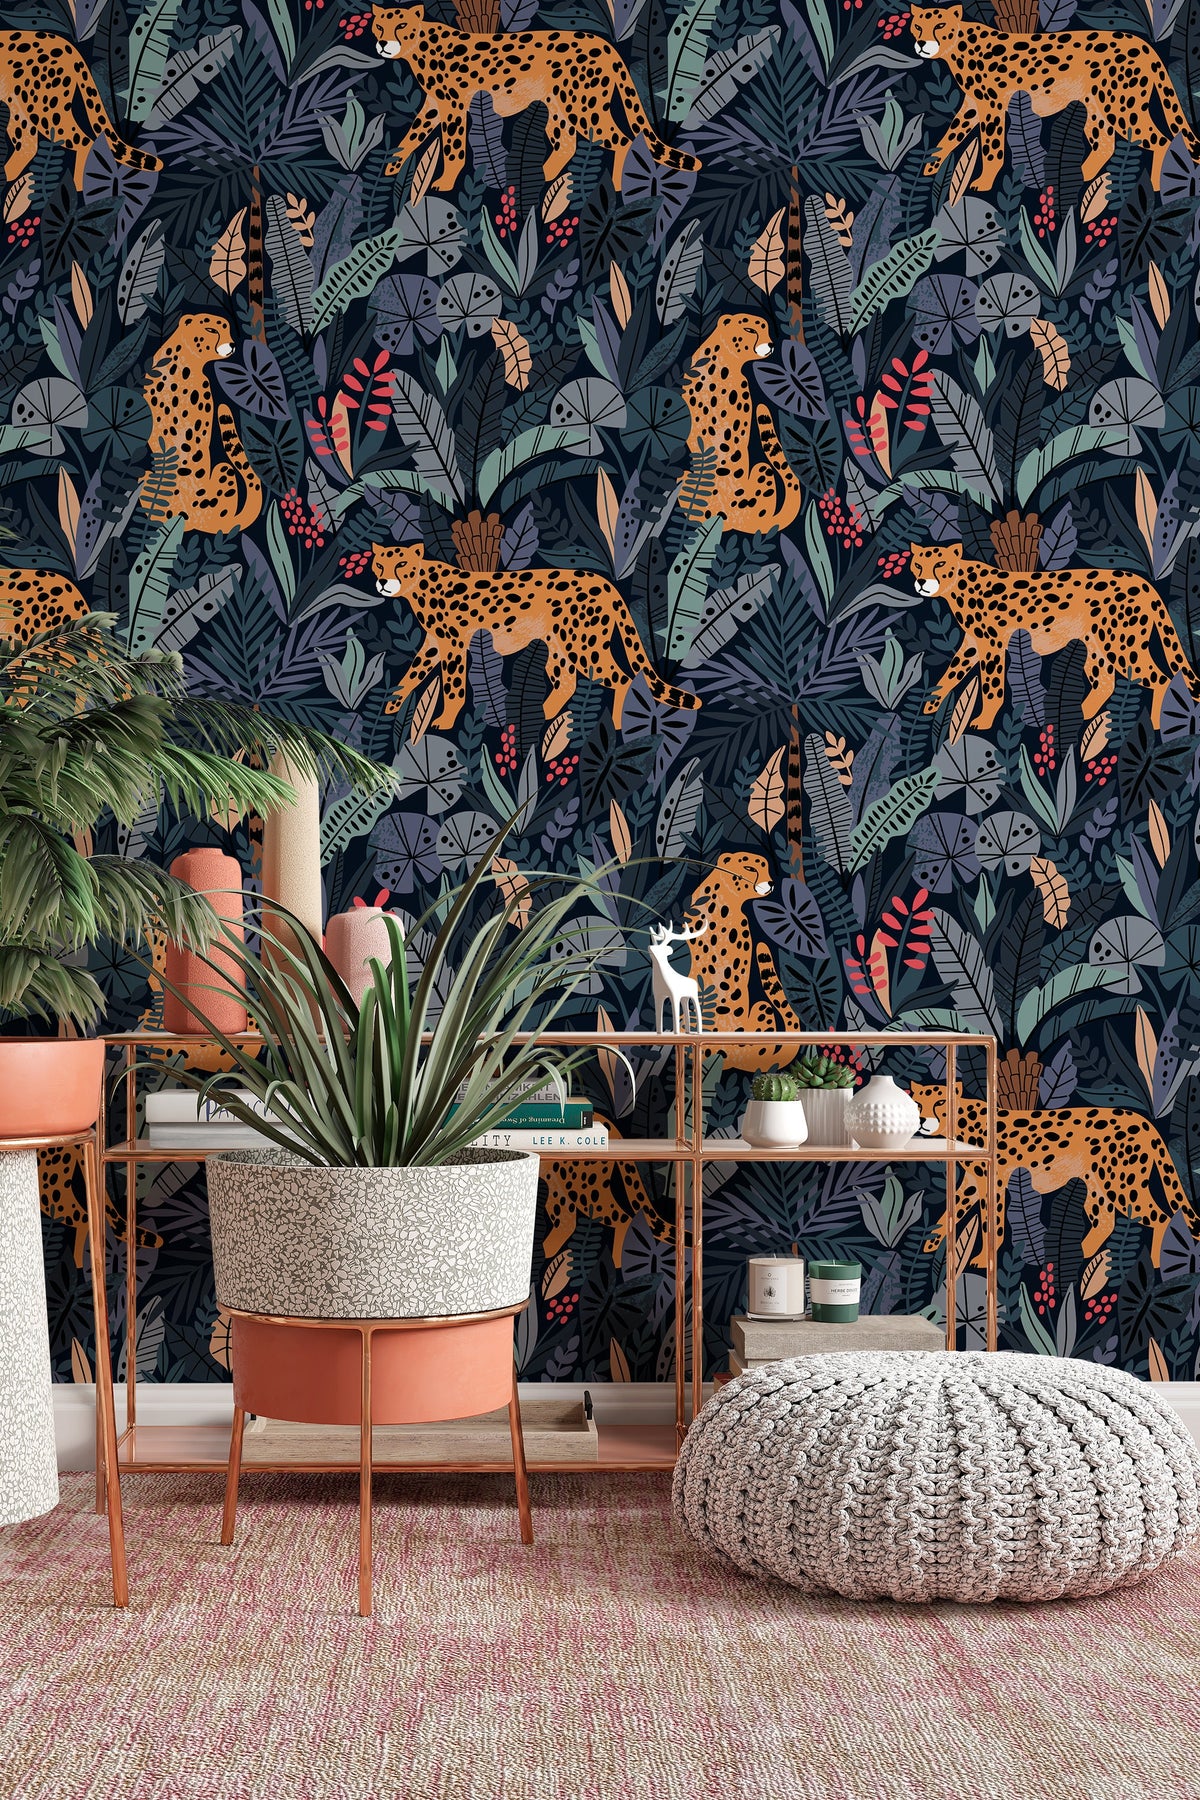 Augustus Jungle Cheetah Wallpaper - 21 Inch Sample - Lelands Wallpaper